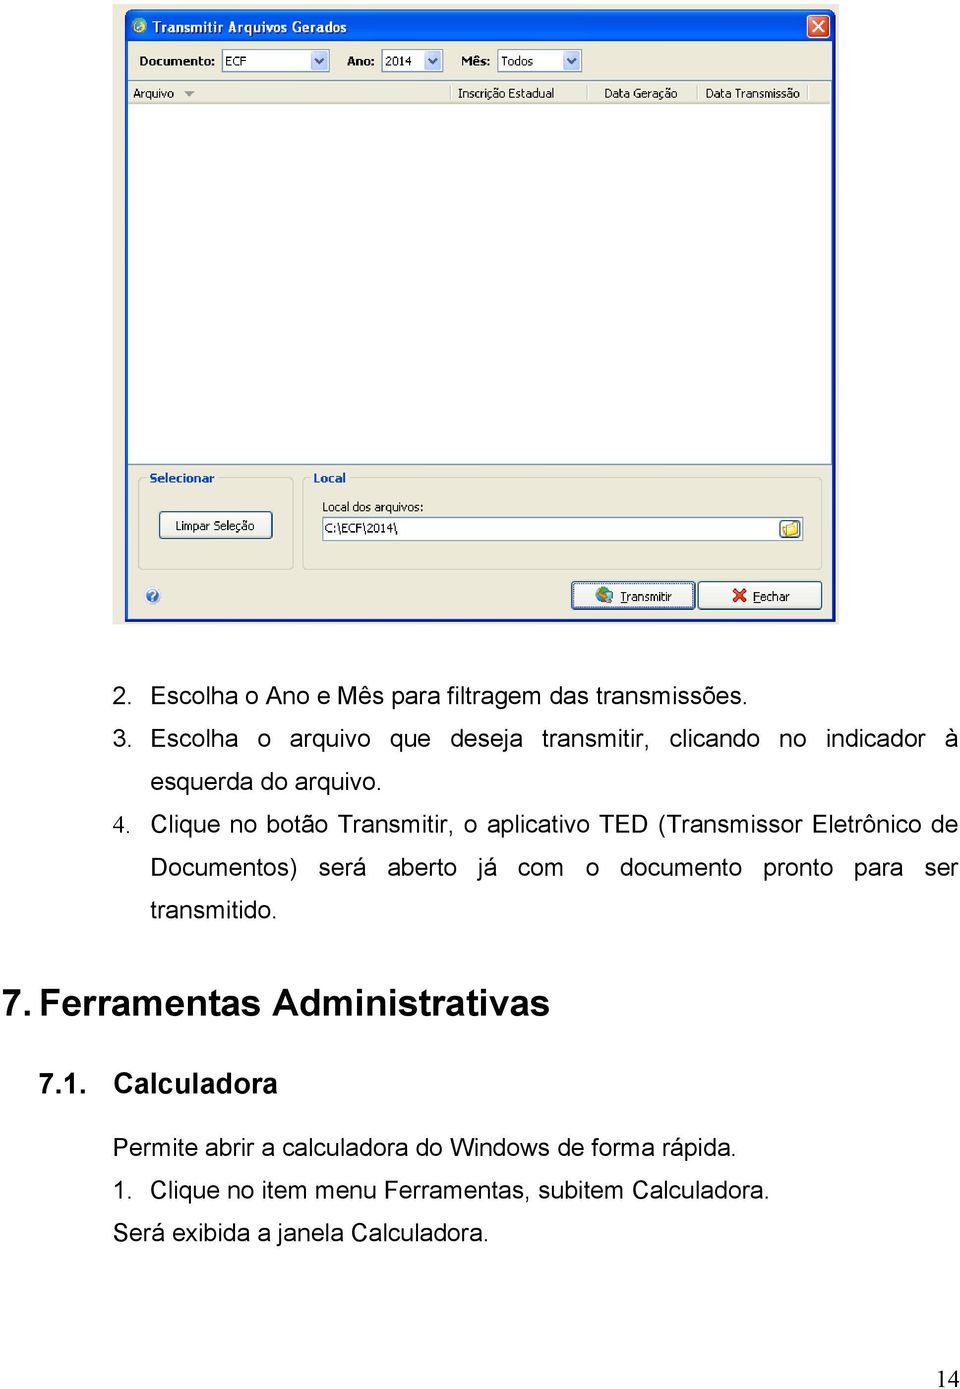 Clique no botão Transmitir, o aplicativo TED (Transmissor Eletrônico de Documentos) será aberto já com o documento pronto